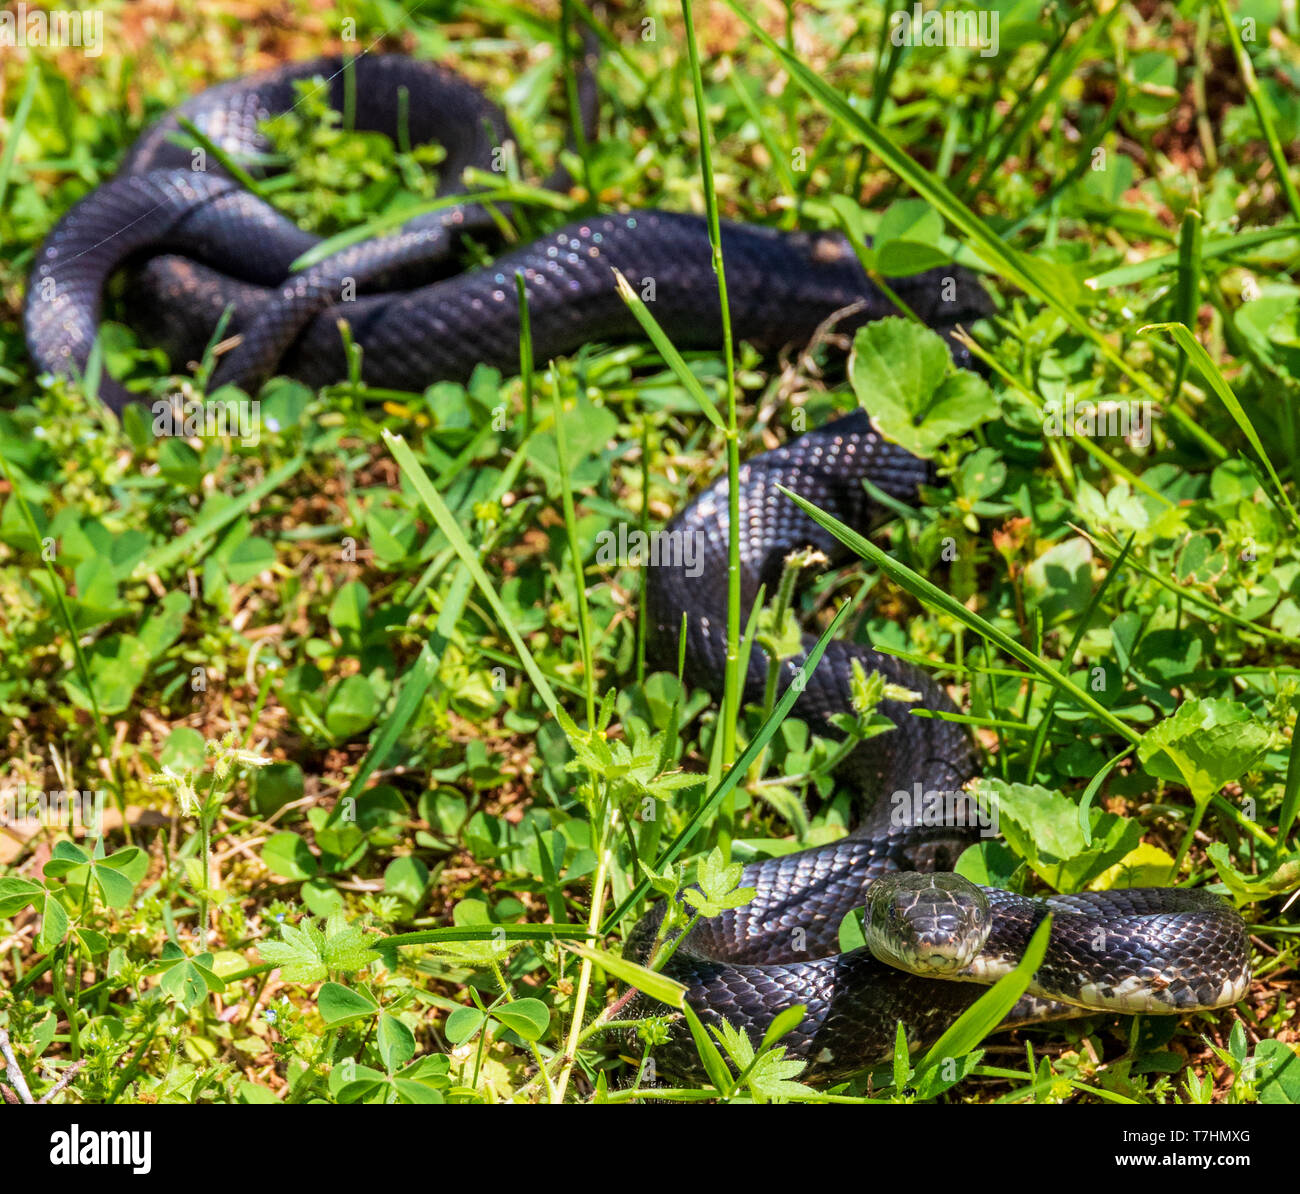 Eine weibliche Schwarze Ratte Schlange, liegend im Gras, beobachten. Stockfoto